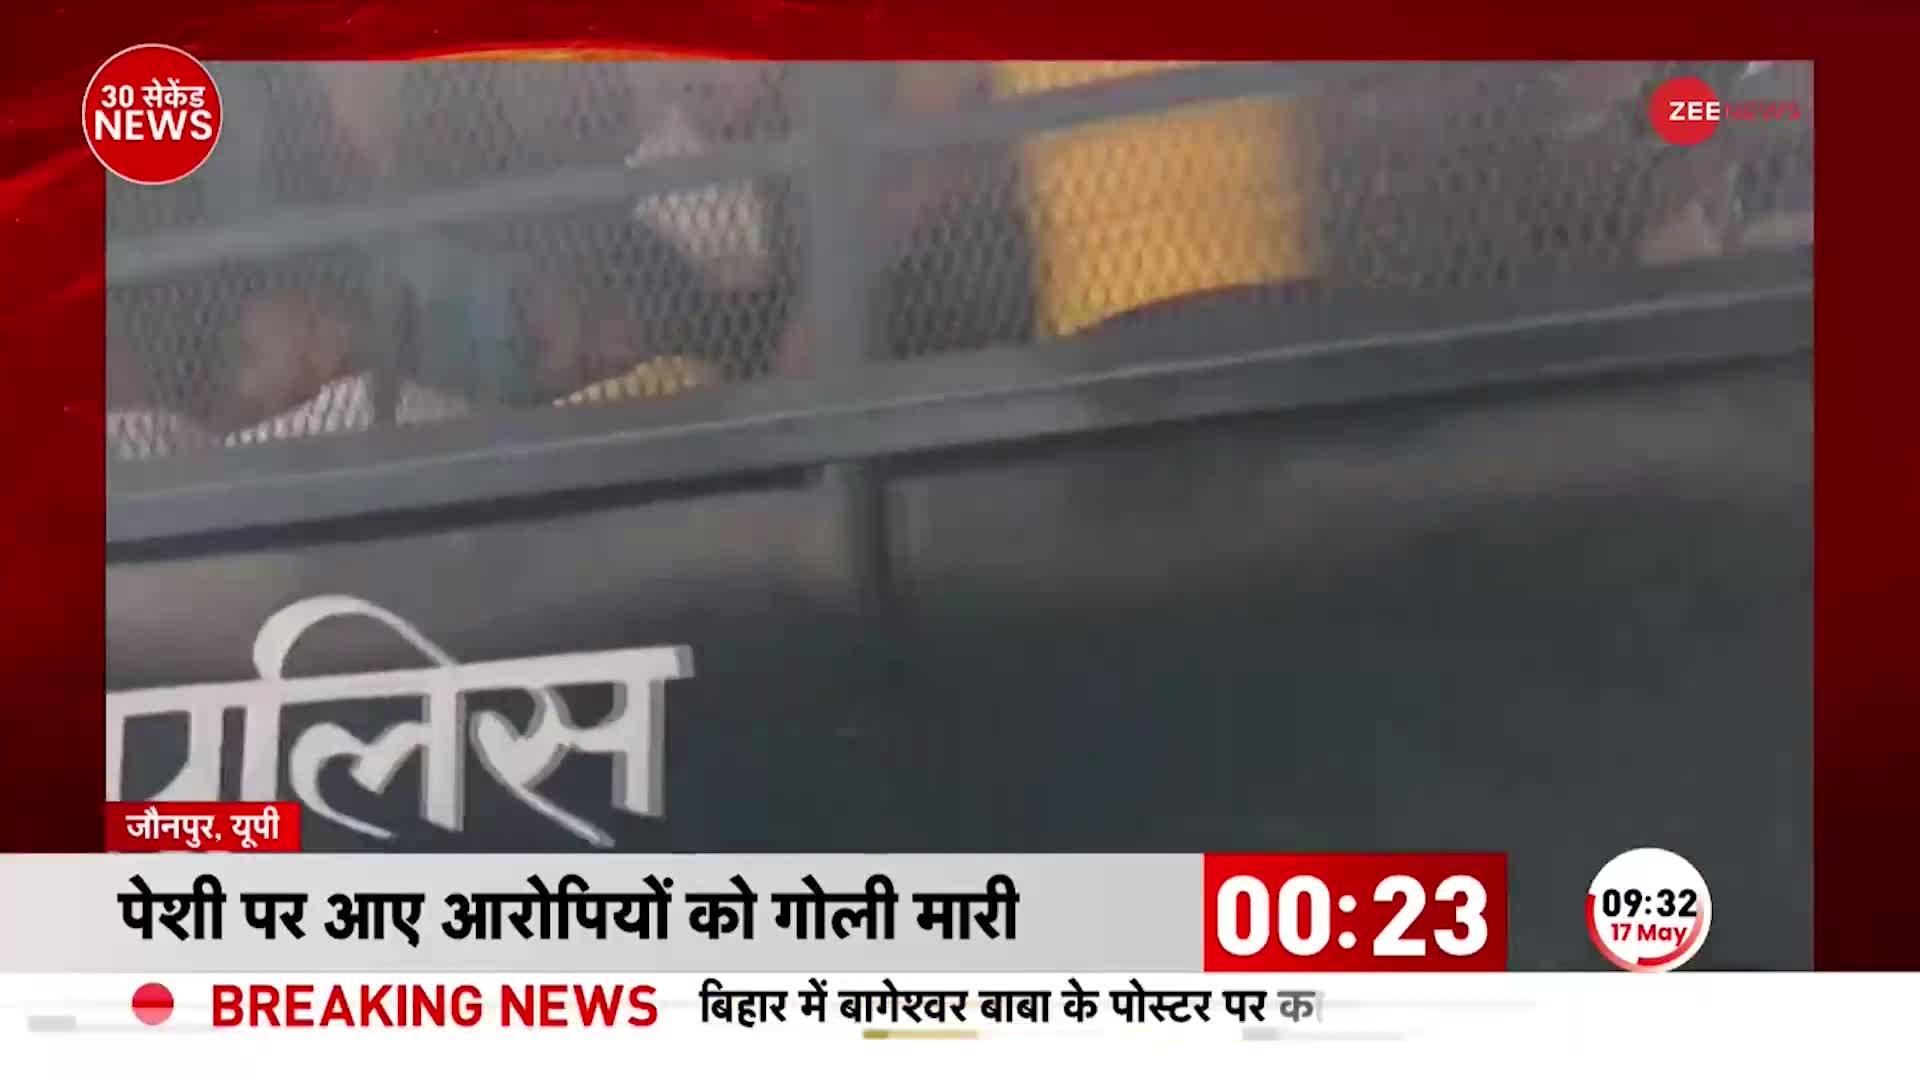 UP News: जौनपुर CJM कोर्ट परिसर में फायरिंग, पेशी पर आए आरोपियों को मारी गोली